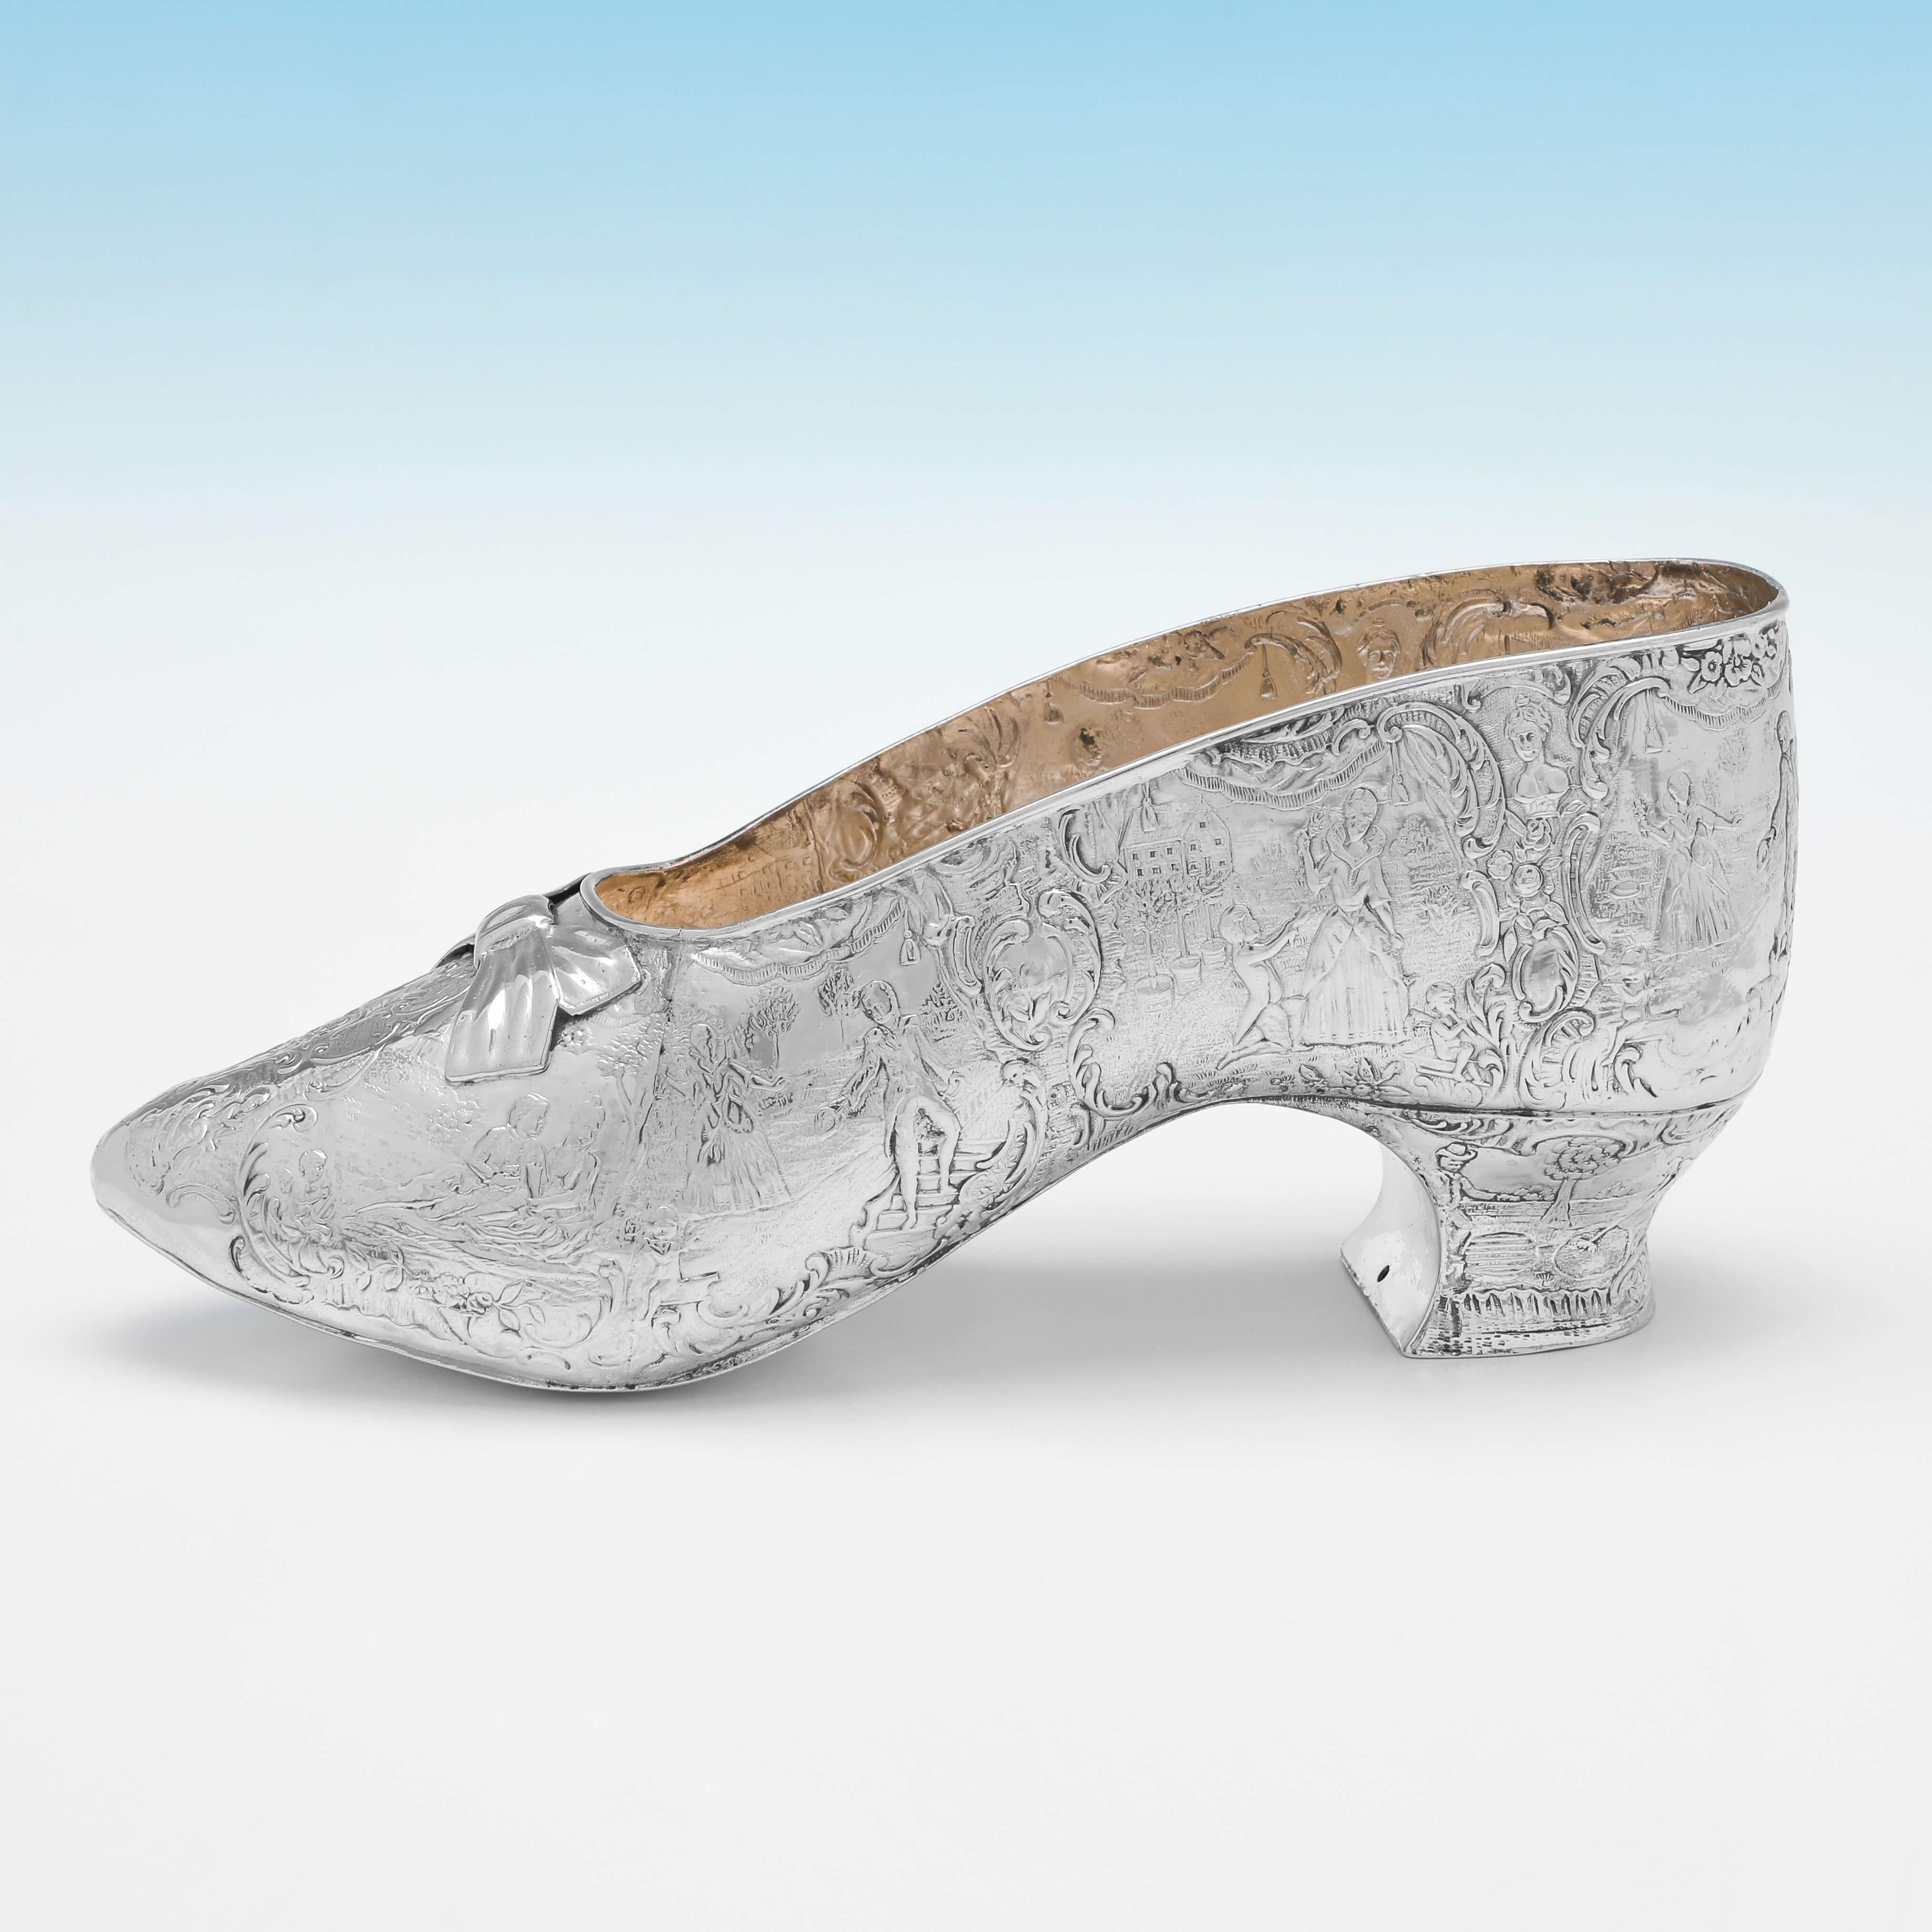 Dieses charmante, viktorianische, antike Modell eines Schuhs aus Sterlingsilber, das 1893 von Thomas Goodfellow nach London importiert wurde, weist eine vergoldete Innenseite und eine wunderschöne ziselierte Dekoration auf. 

Das Schuhmodell ist 9